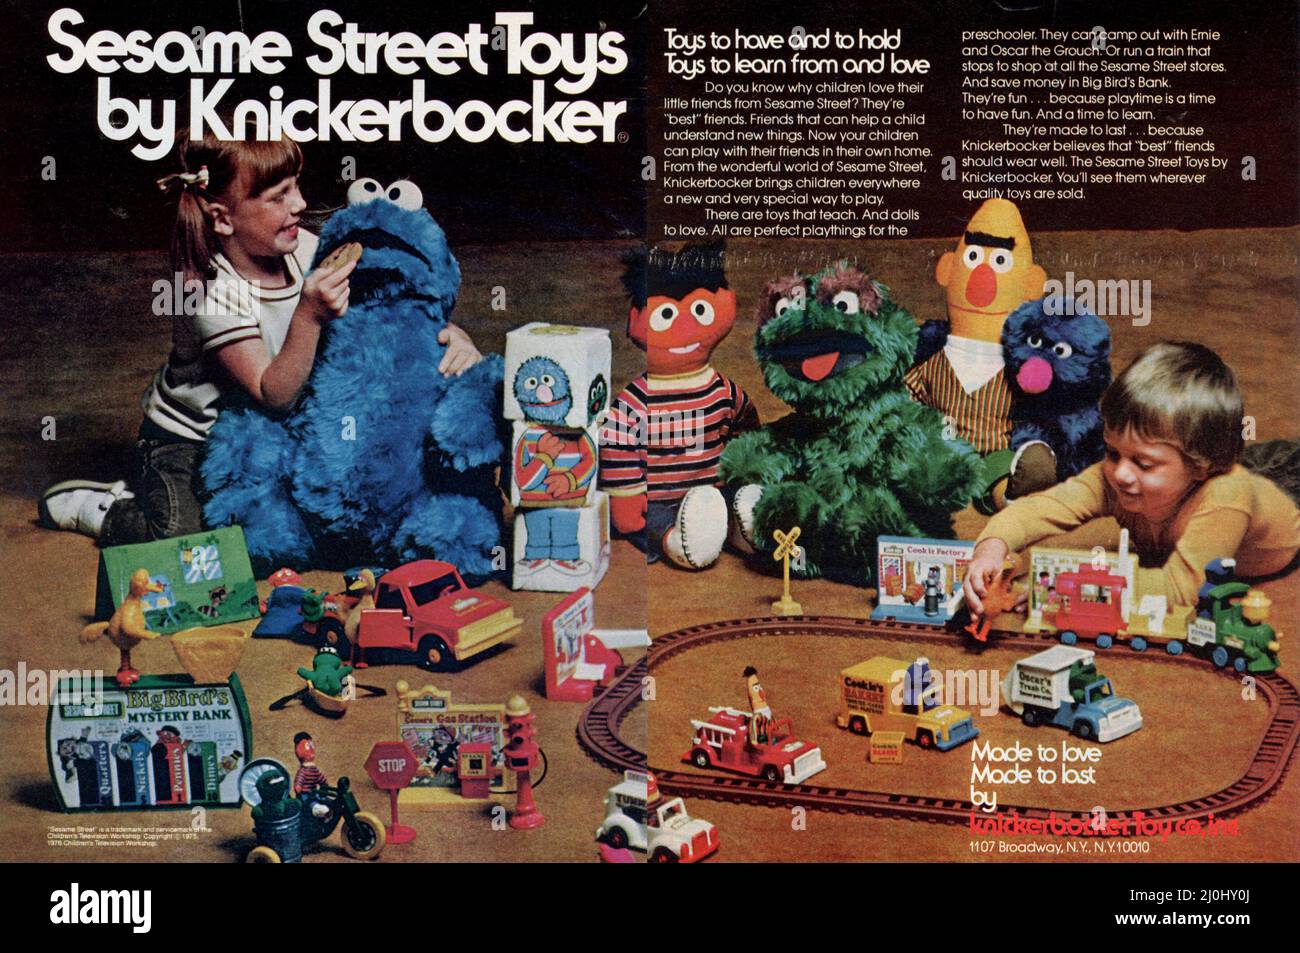 Play with Me Cookie Monster (Vintage Sesame Street, Knickerbocker